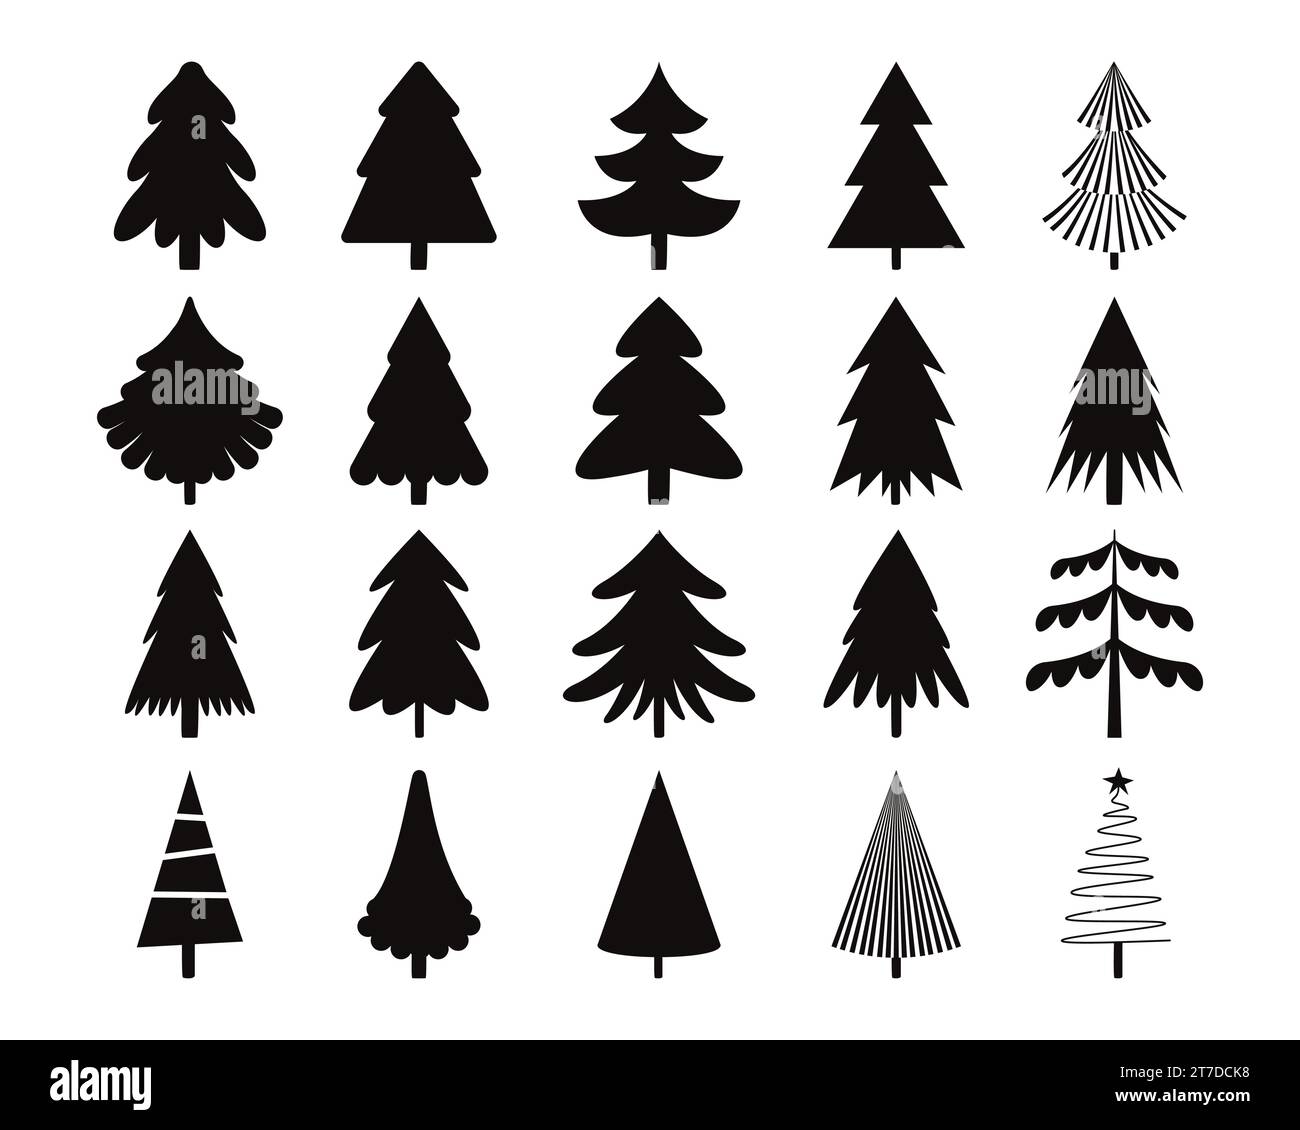 Schwarze weihnachtsbaumsymbole. Nahtloser Druck von Winterbäumen mit Ornamenten, Schneeflocken und Geschenken. Vektor-Schwarzweißhintergrund Stock Vektor